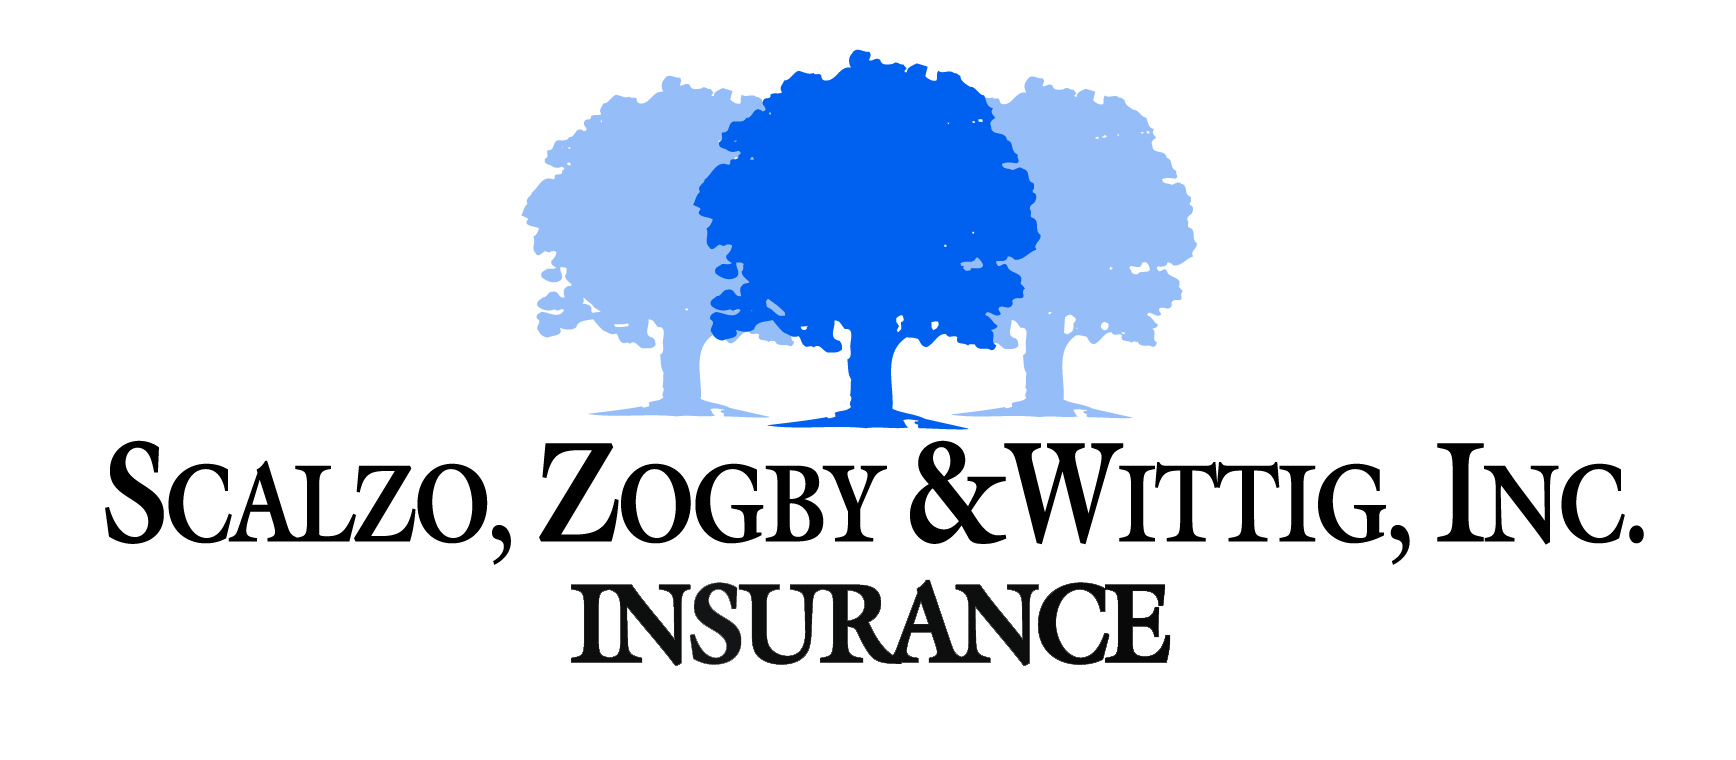 04. SZW Insurance